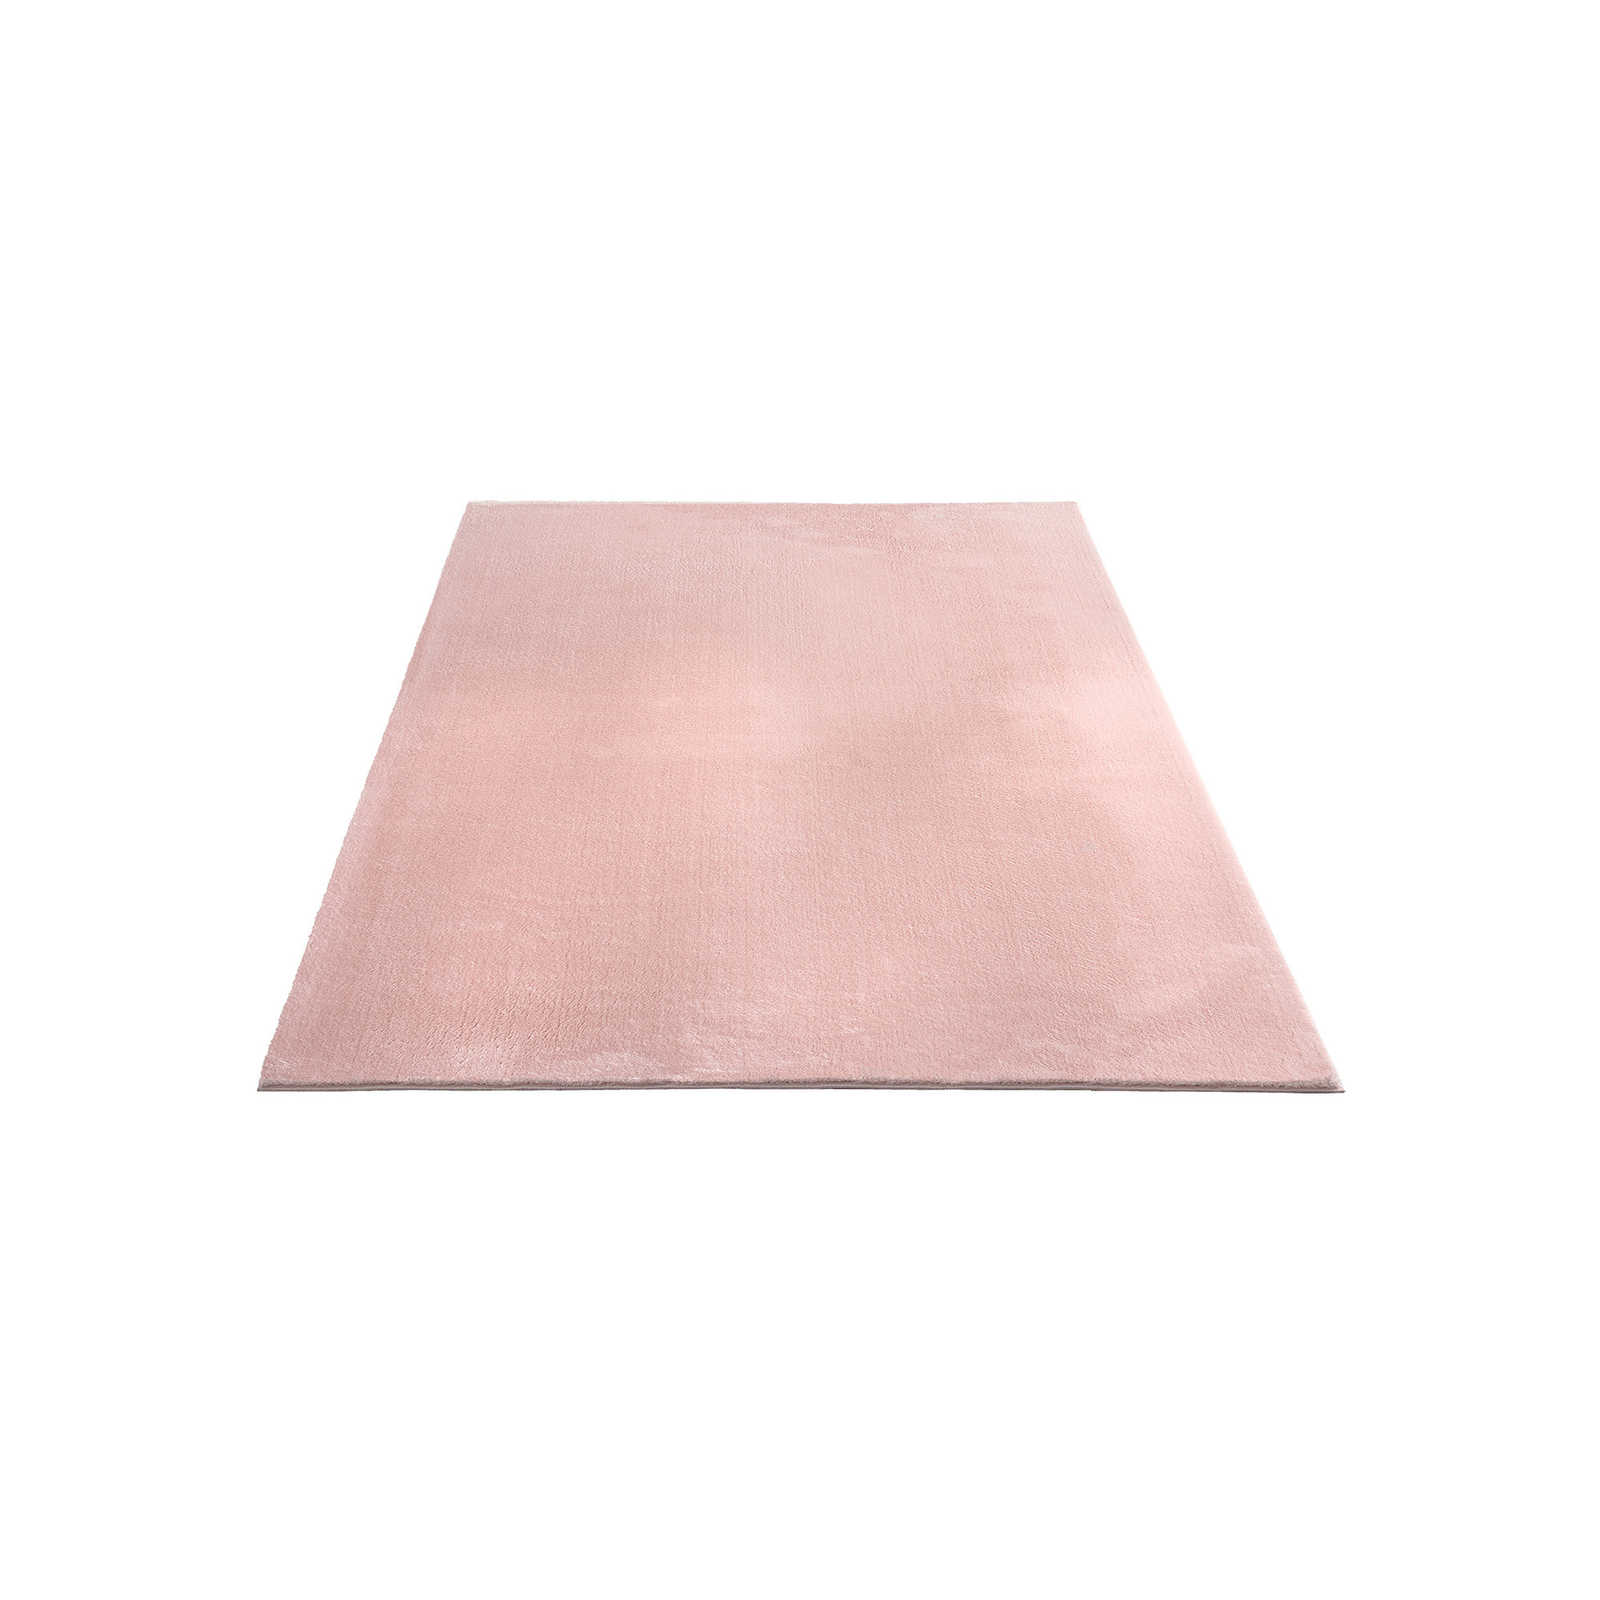 Fijnpolig tapijt in roze - 230 x 160 cm
